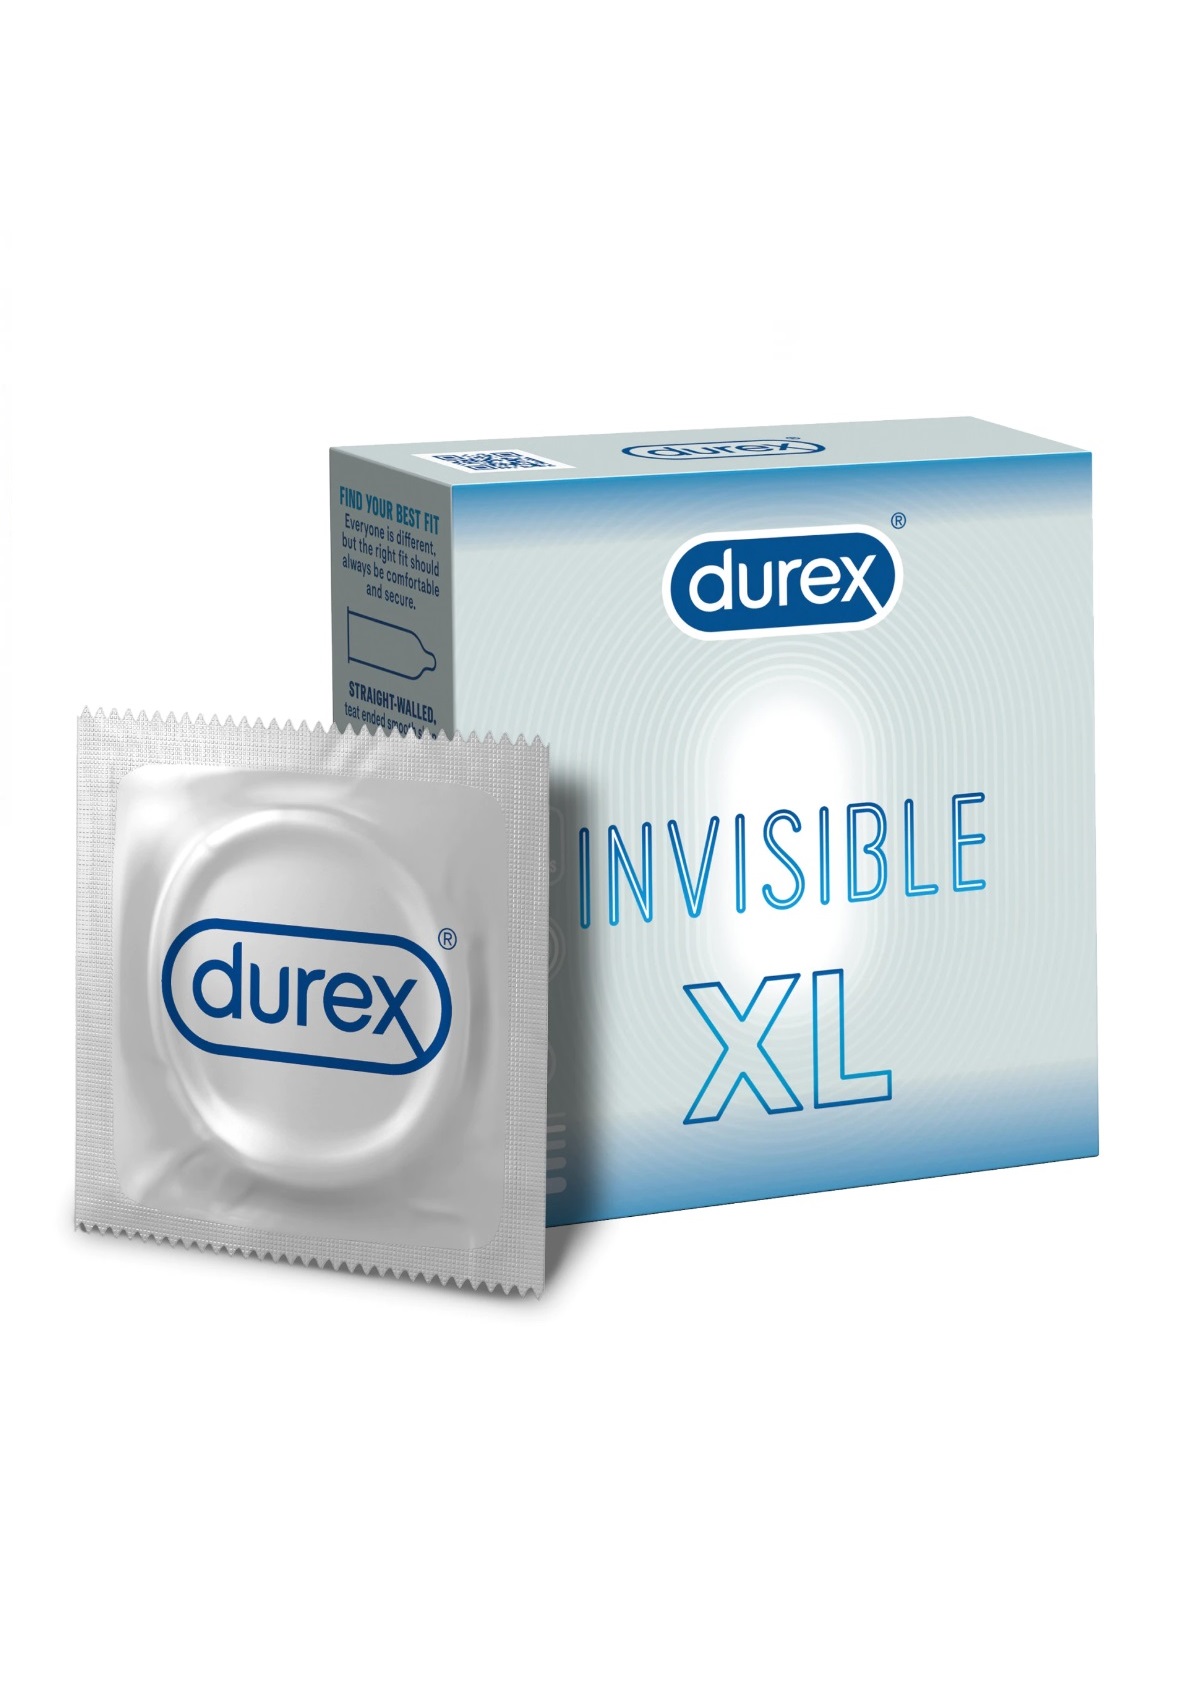 Durex Invisible XL -3db.